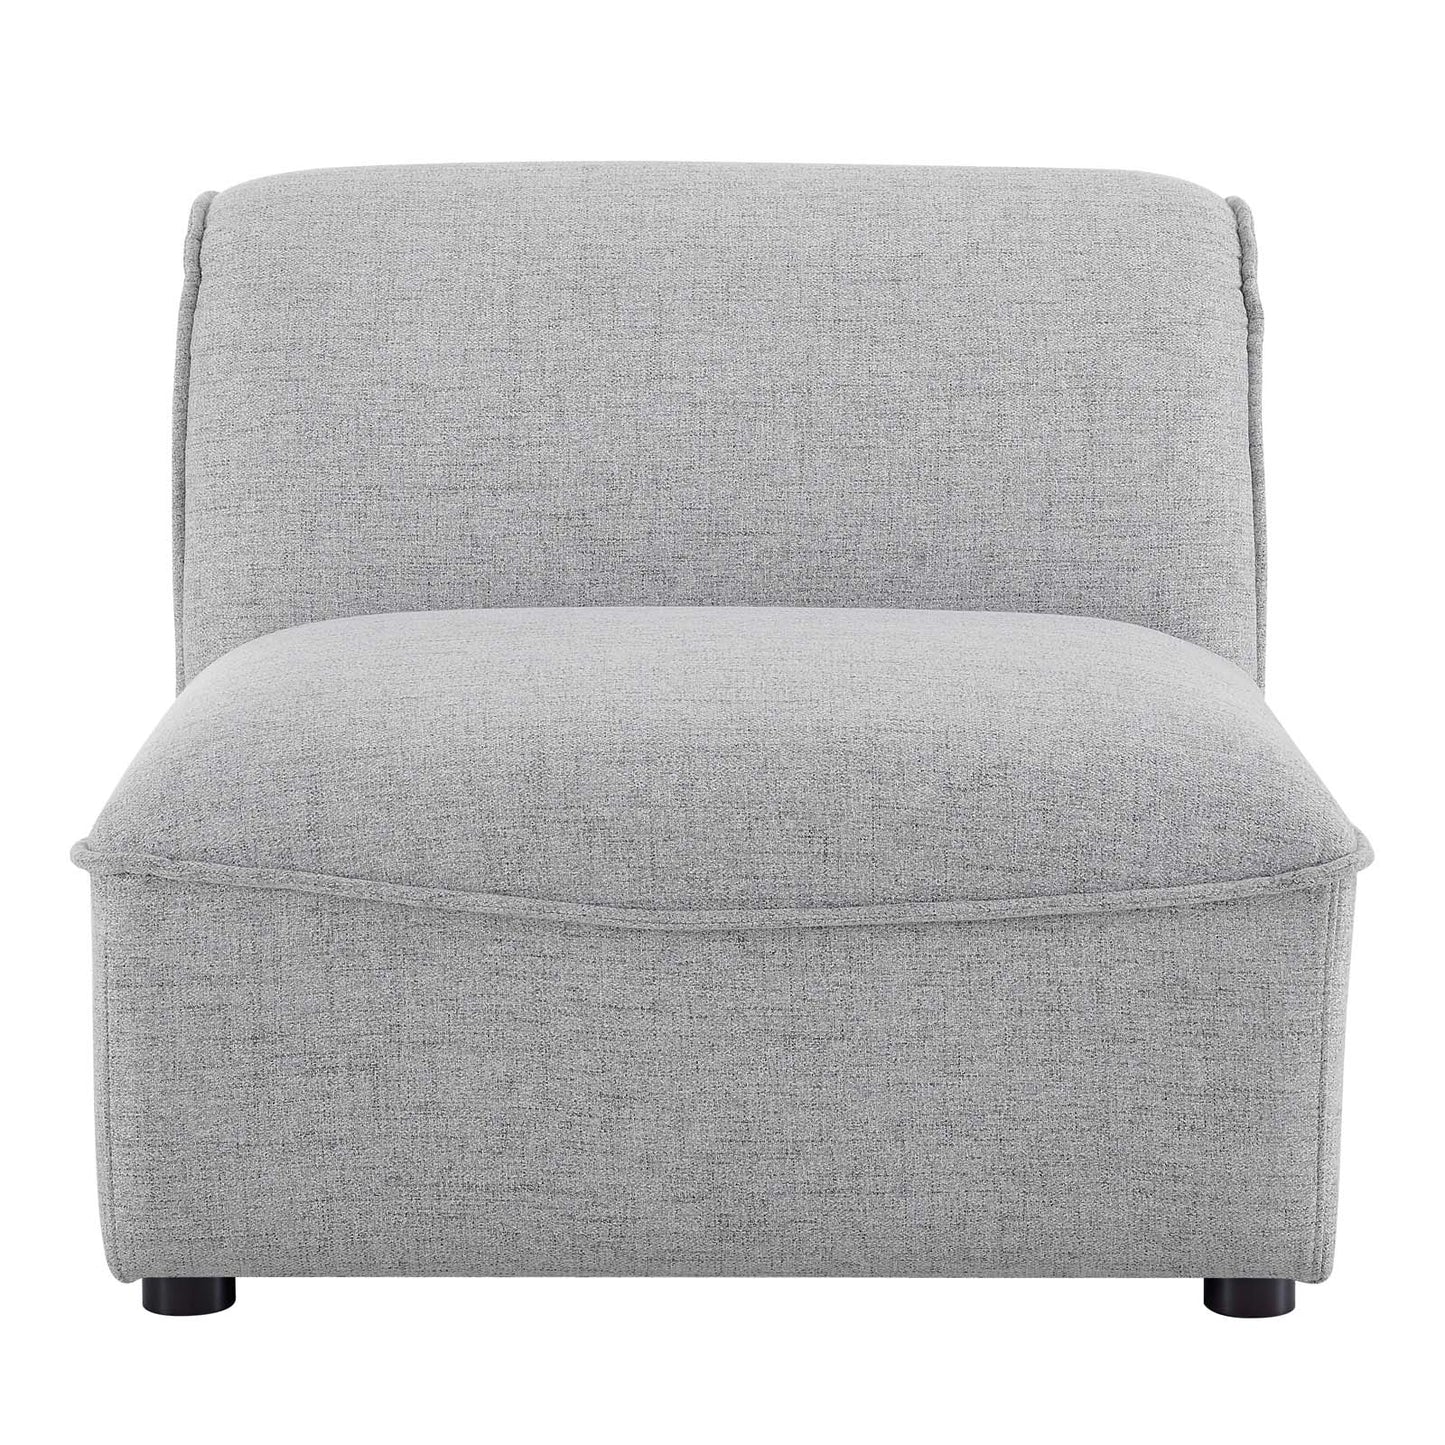 Comprise Armless Chair Light Gray EEI-4418-LGR